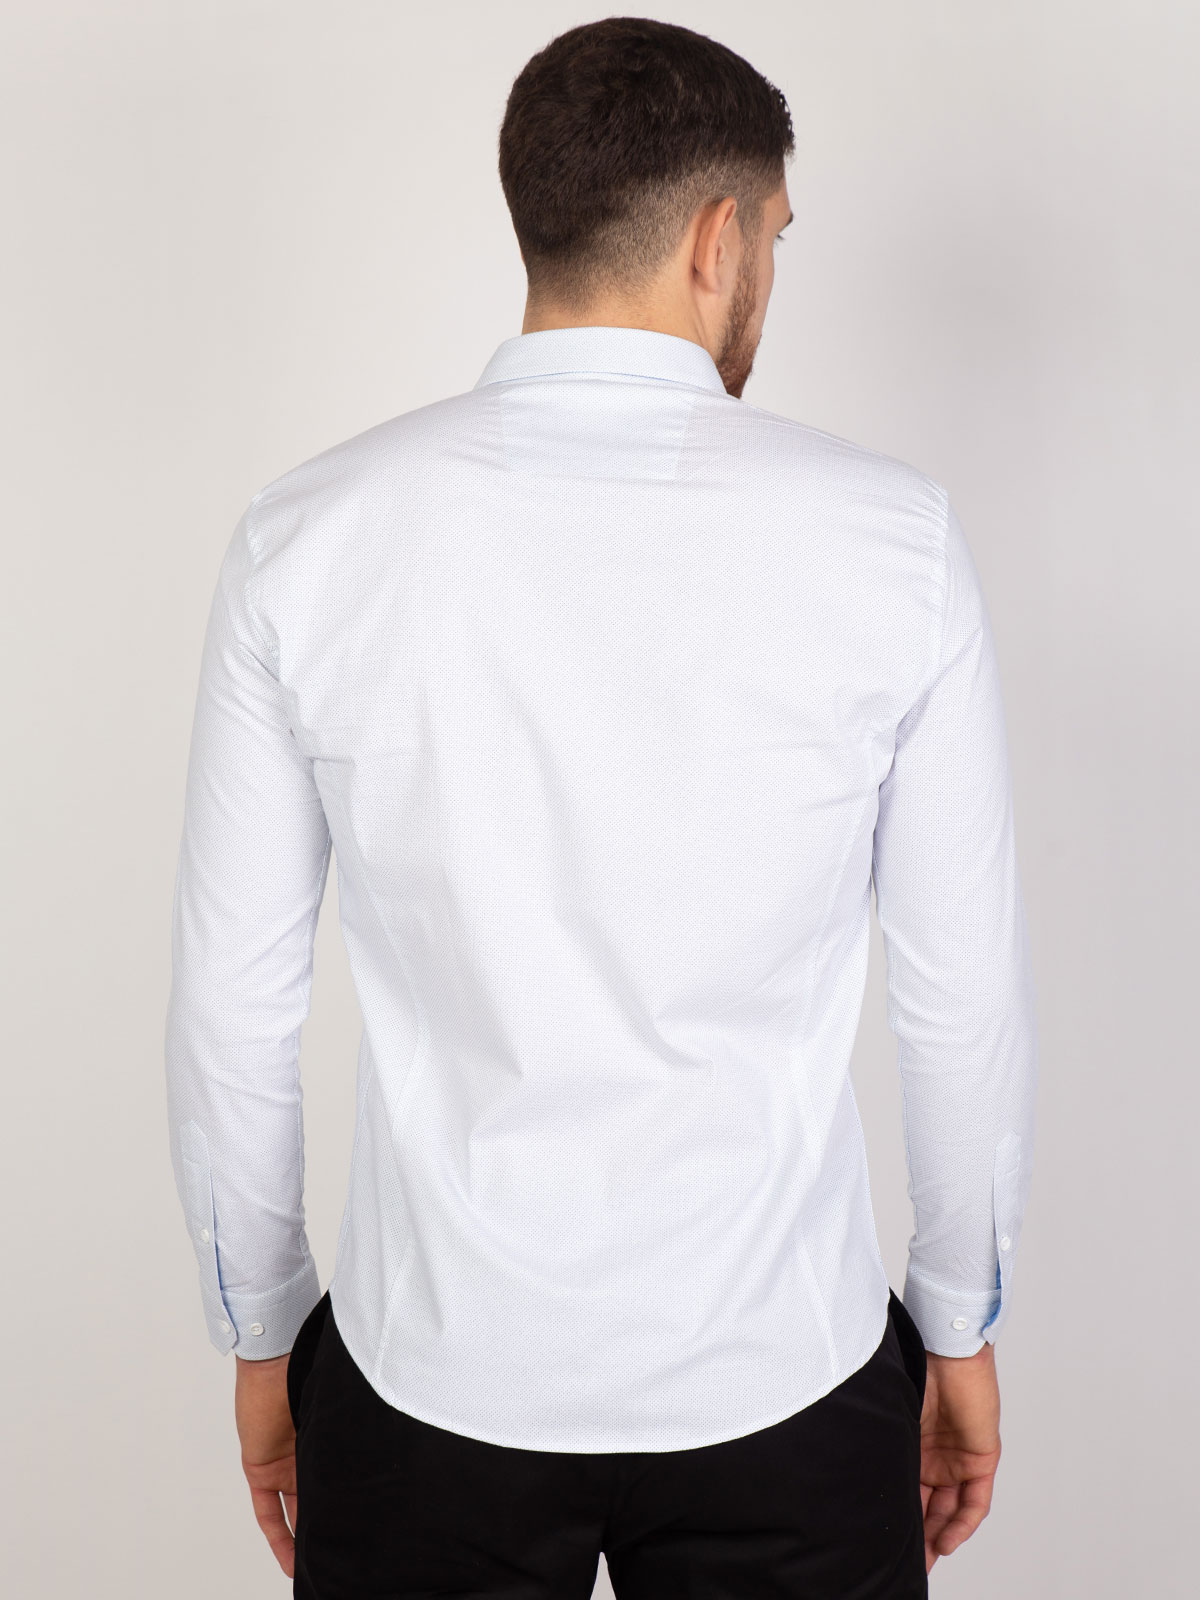 Λευκό πουκάμισο με μικρές γαλάζιες κουκ - 21502 € 40.49 img4